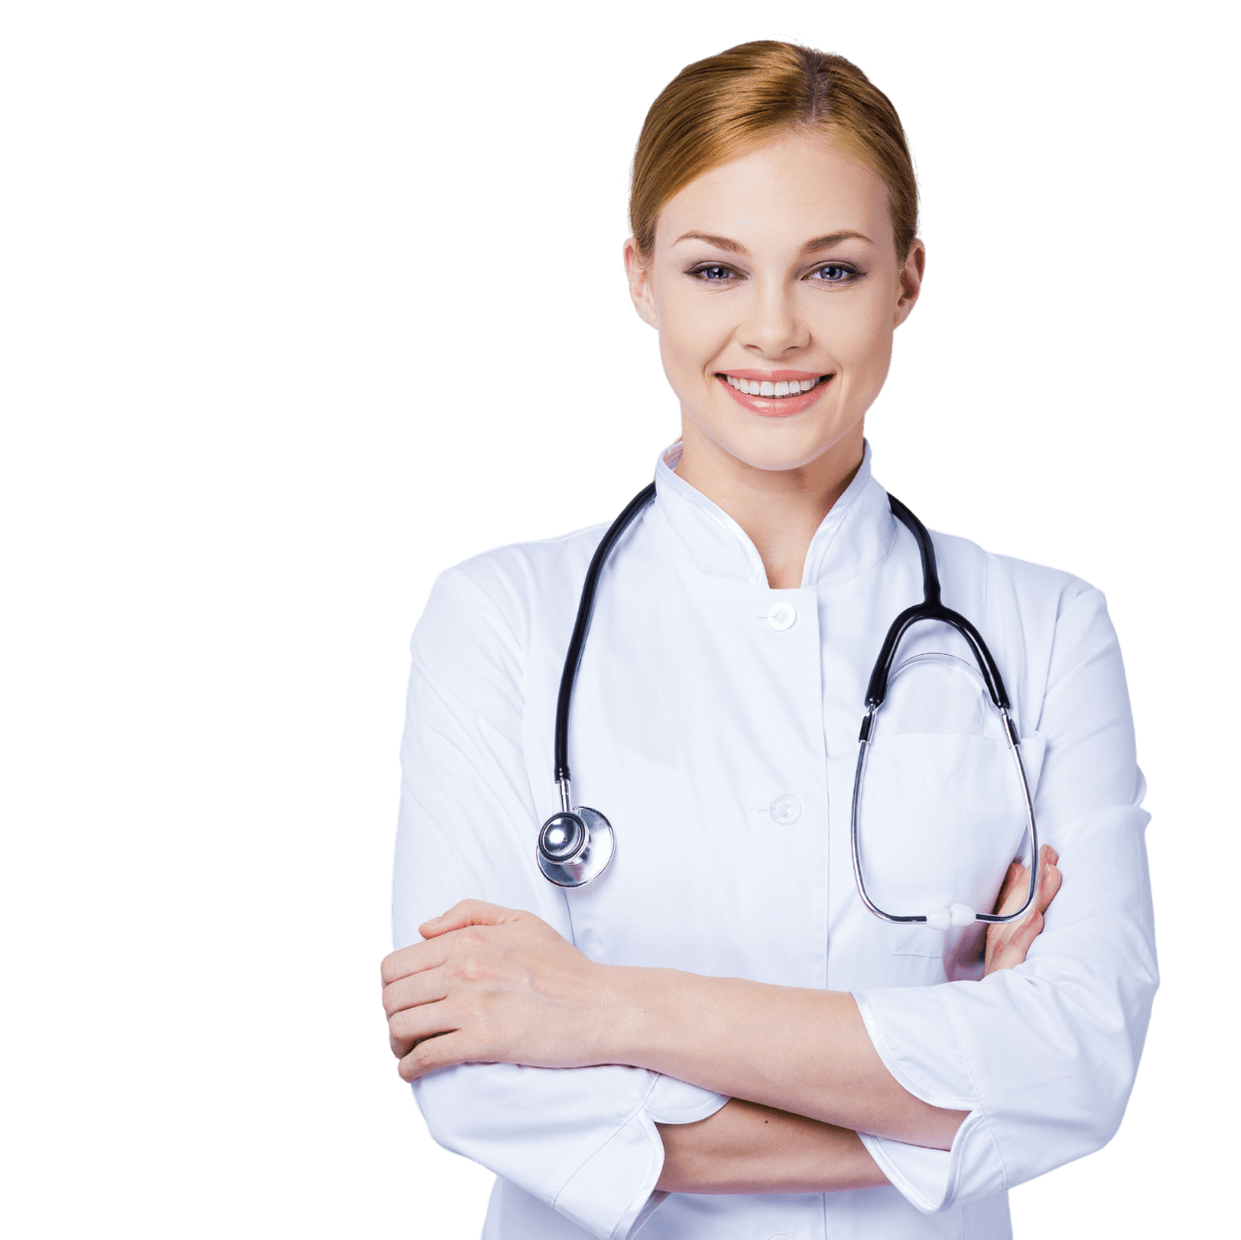 Ärztin über IM-WALD-SEIN® Das grüne Rezept: hohe Praktikabilität fürs Praxisteam und gute Patienten-Compliance